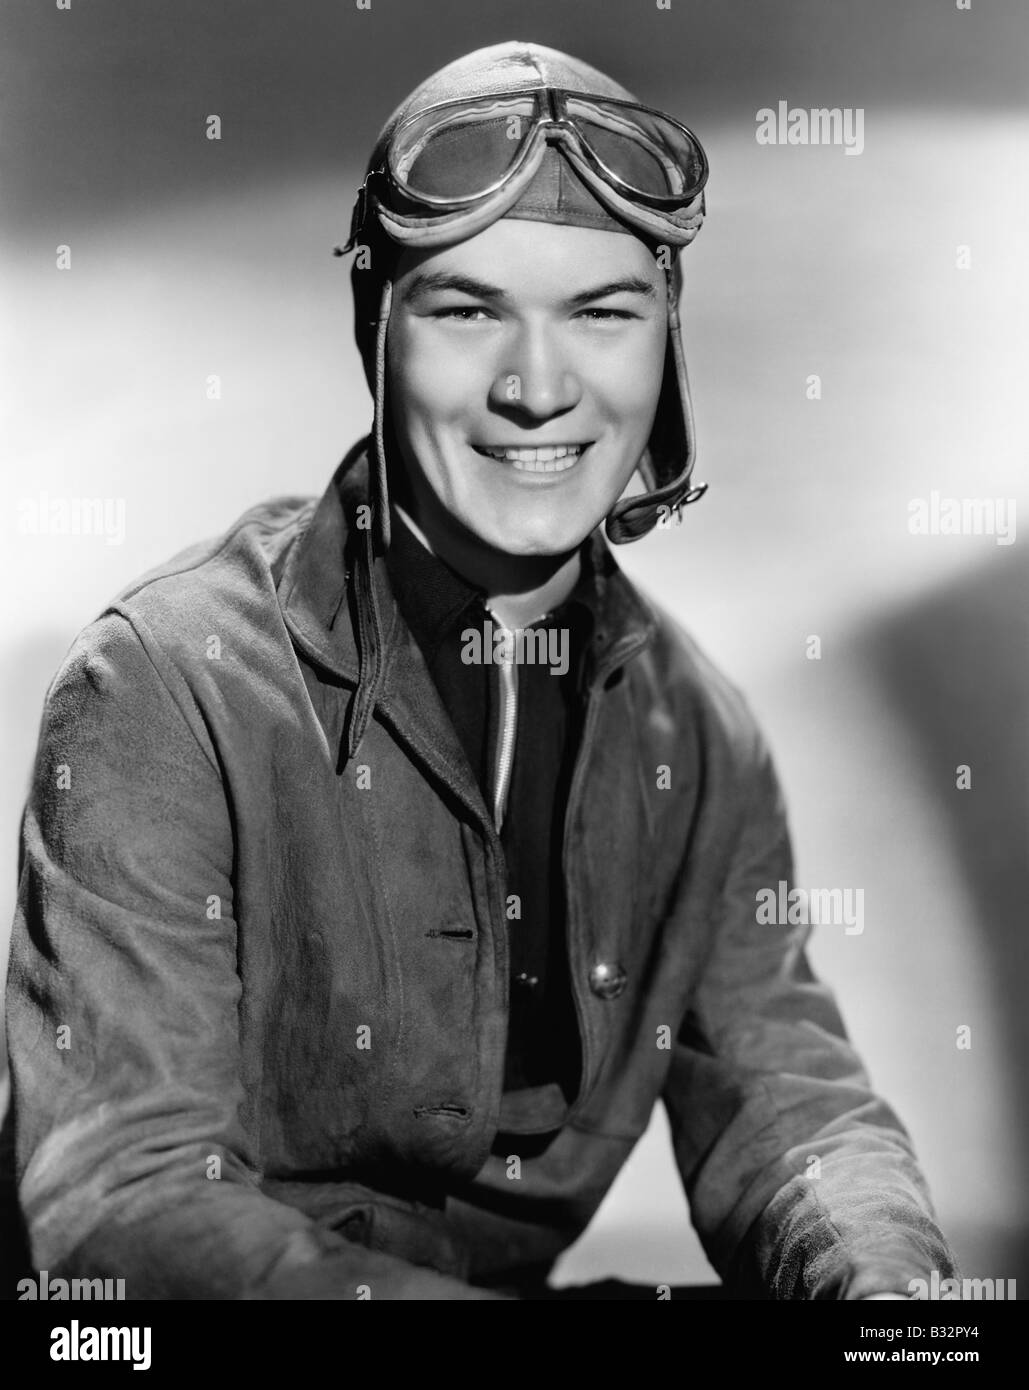 Portrait of man wearing flight gear Stock Photo